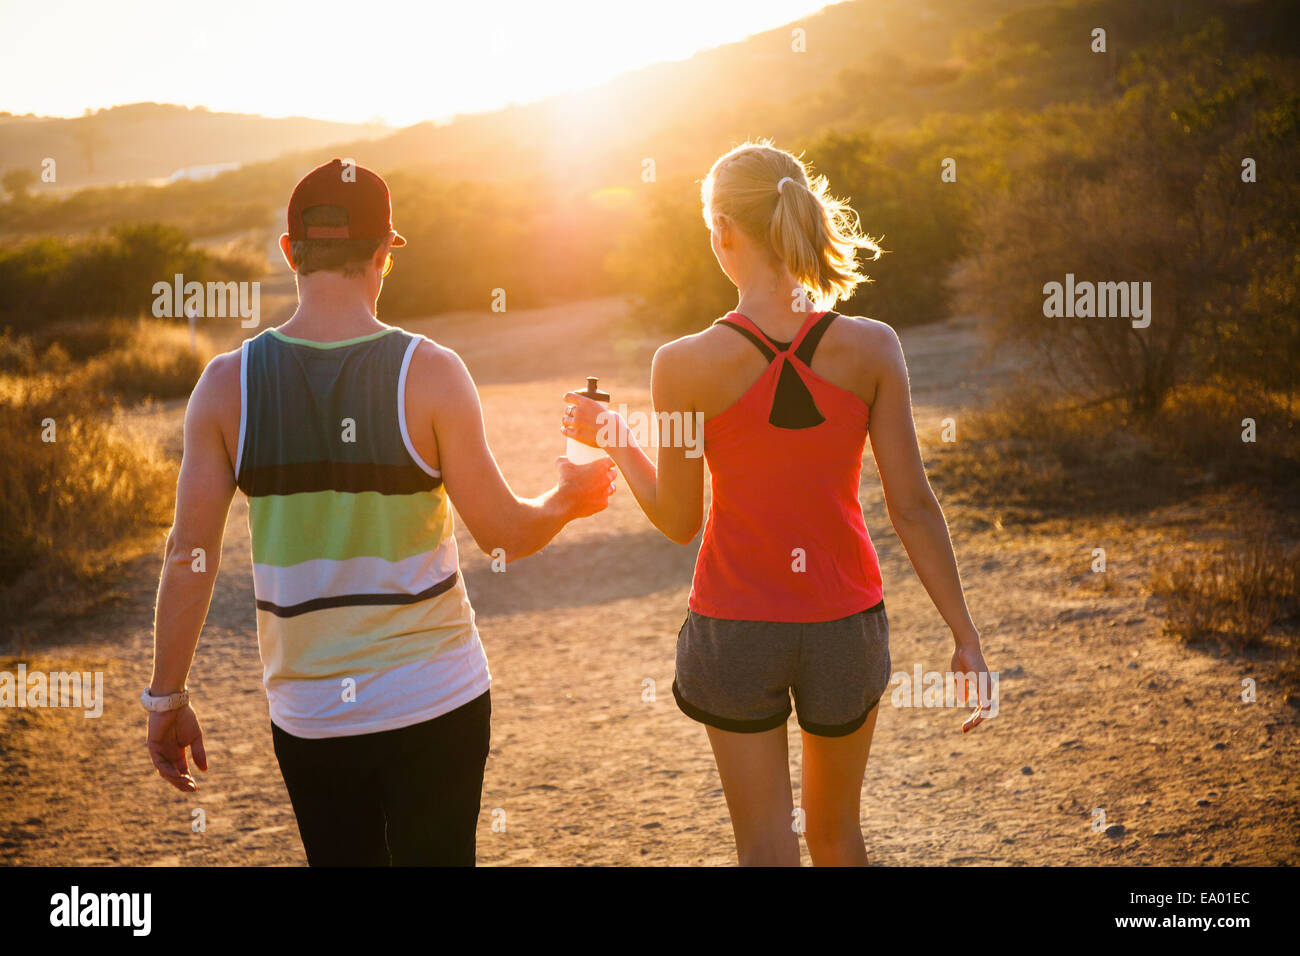 Per gli amanti del jogging camminando sul percorso soleggiato, Portland, CA, Stati Uniti d'America Foto Stock